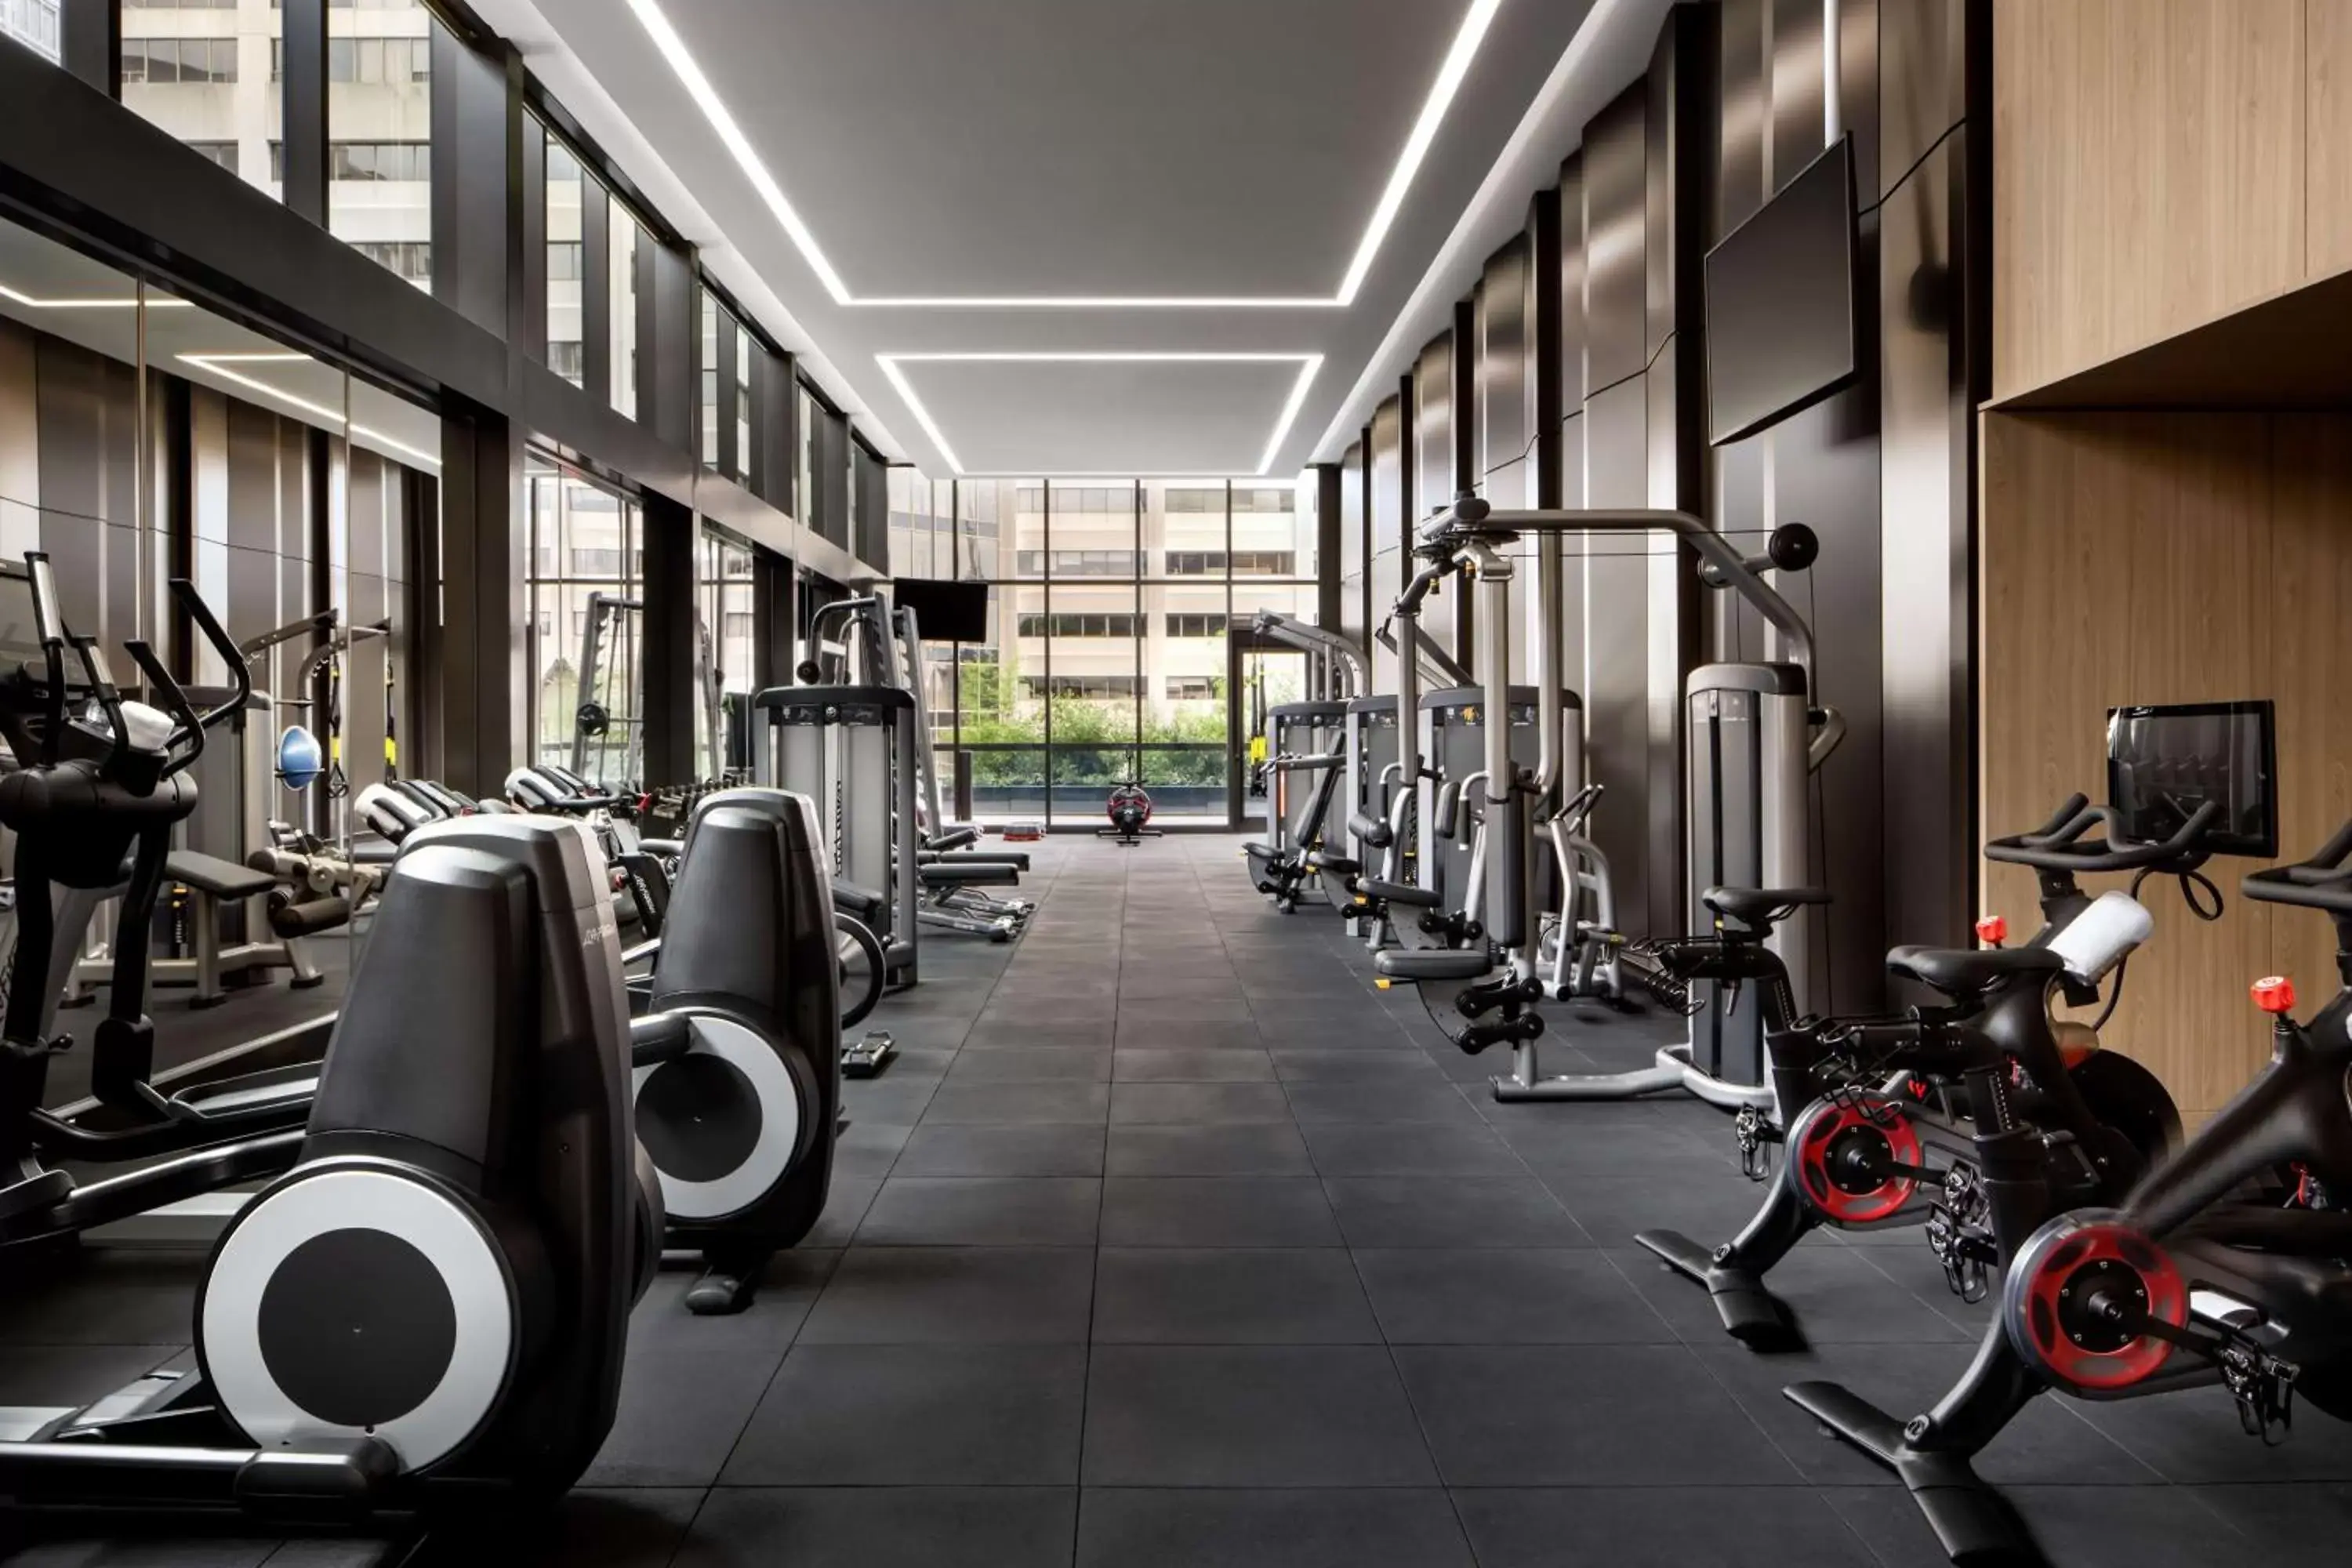 Fitness centre/facilities, Fitness Center/Facilities in Park Hyatt Toronto